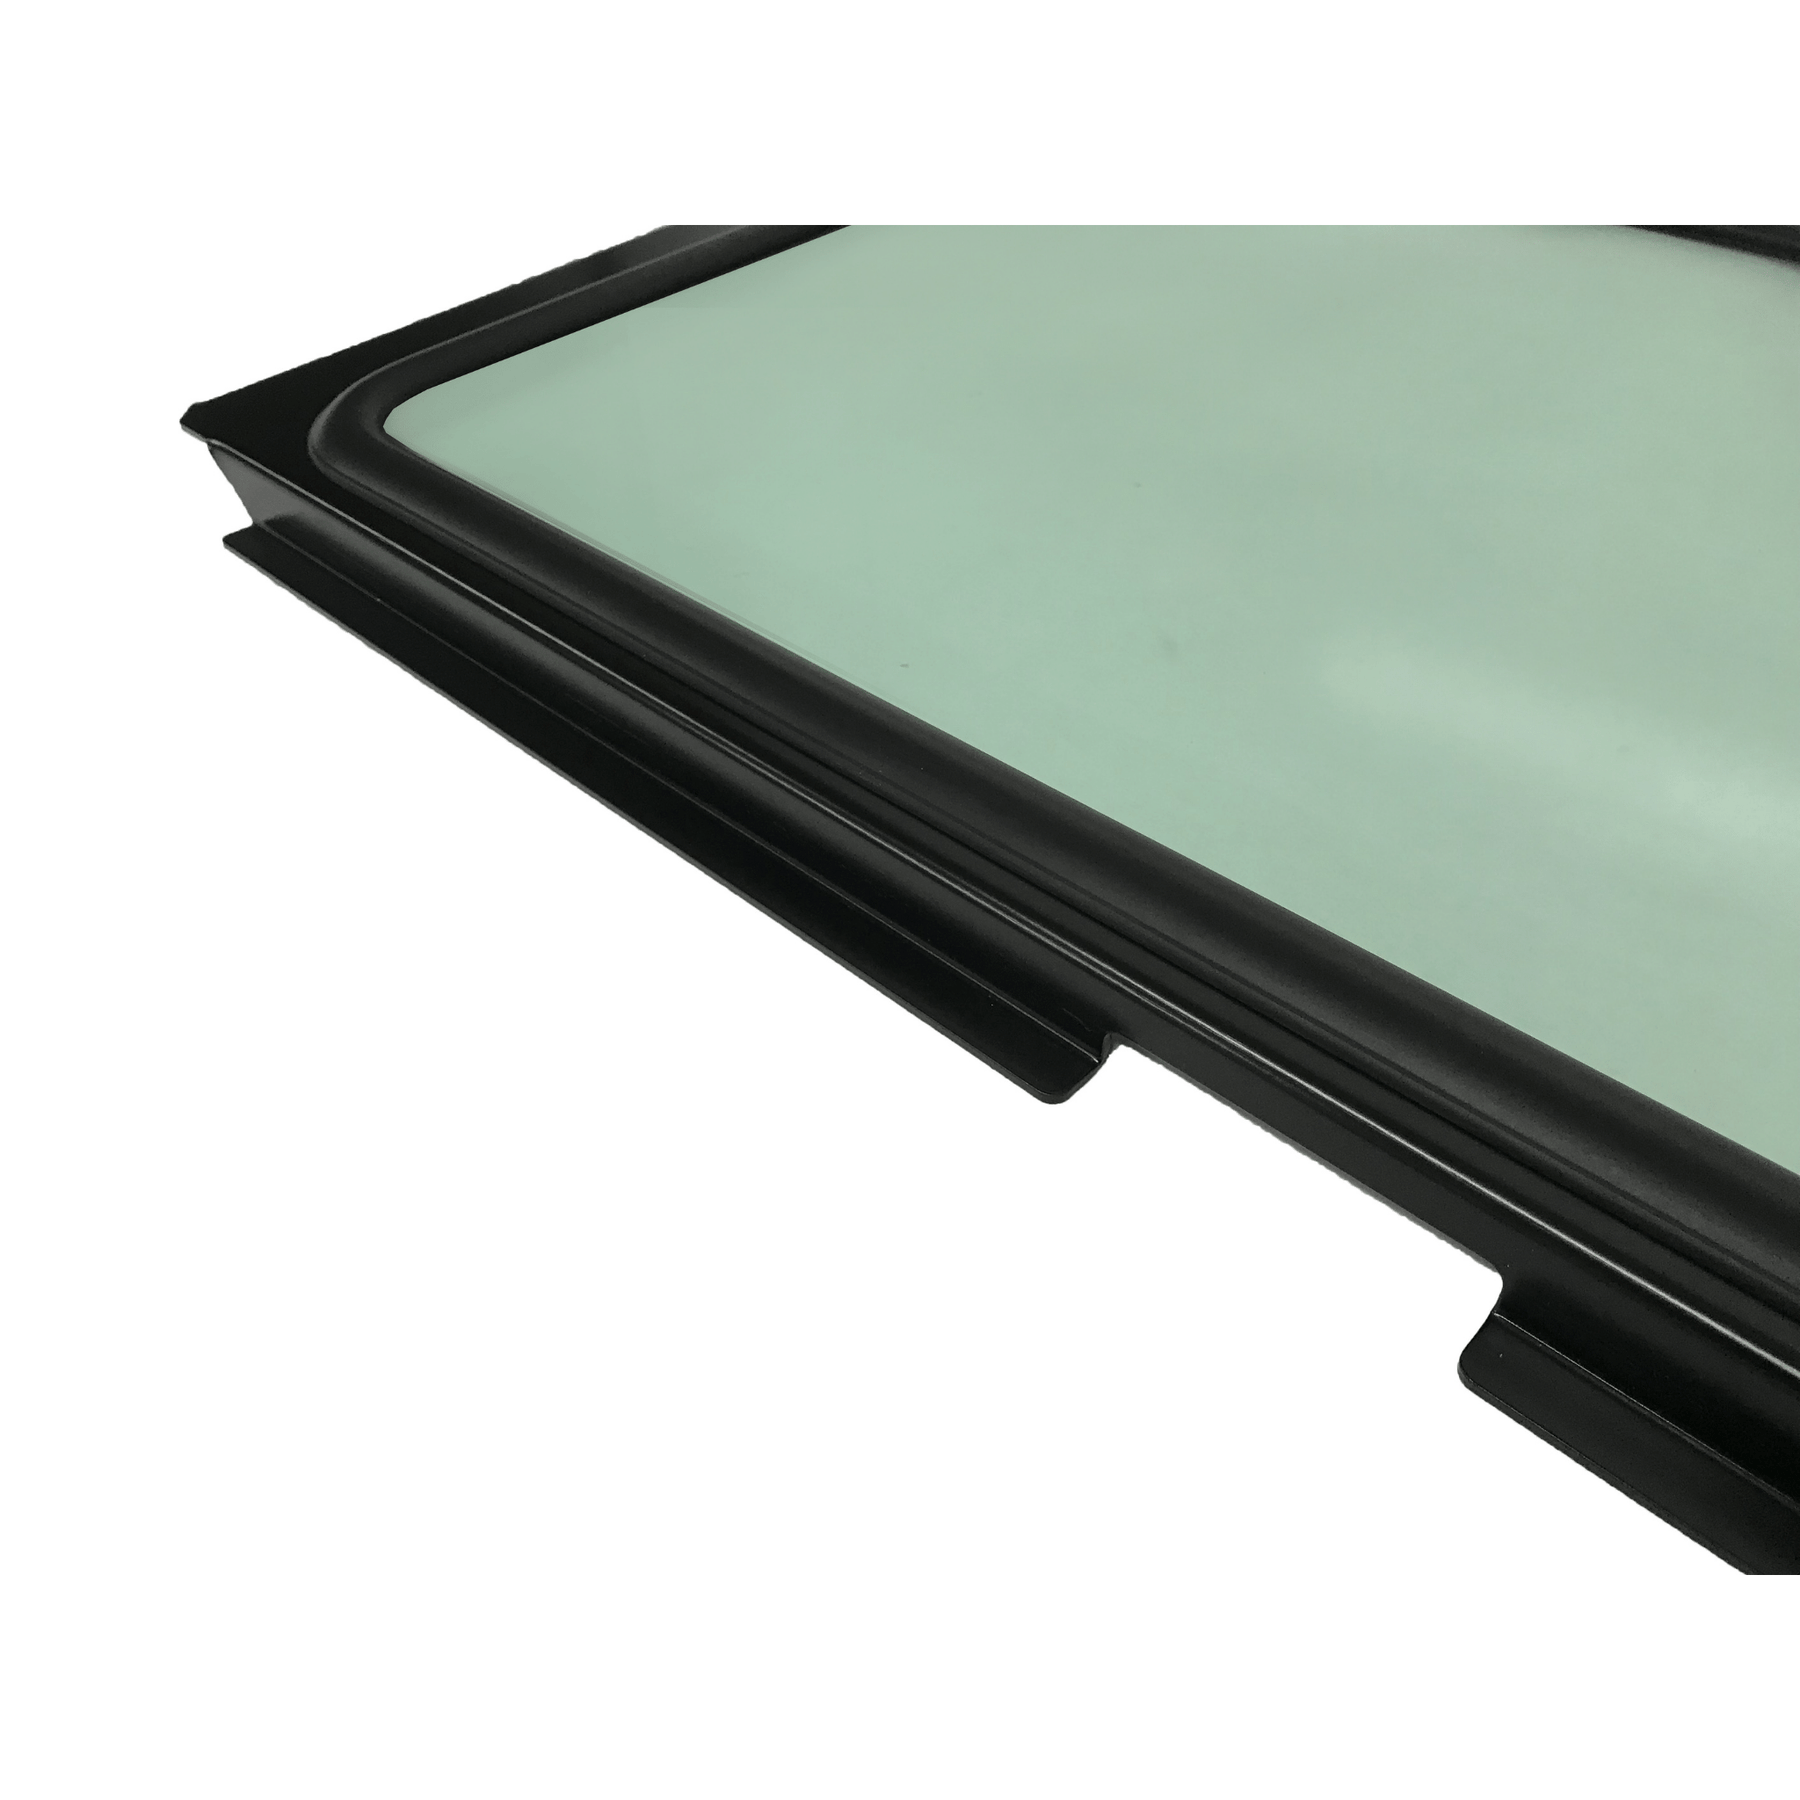 Polaris RZR XP Turbo & XP 1000 Glass Windshield for CageWrx Baja Spec Cage (2014-2018)